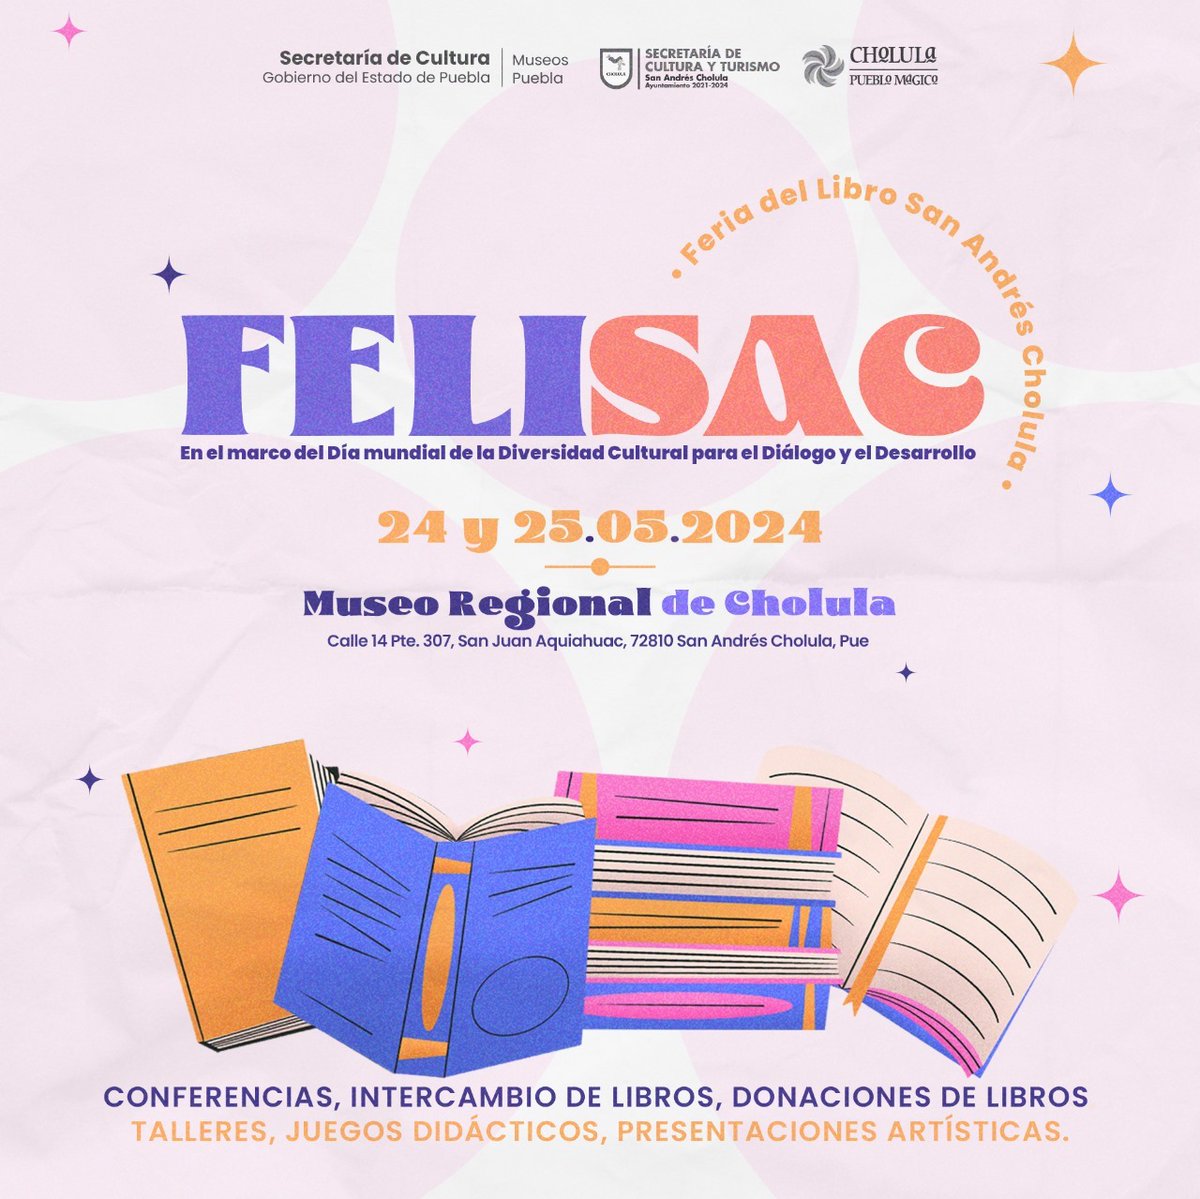 La Secretaría de Cultura y Turismo tiene todo listo para la 📚#FeriaDelLibro #SanAndrésCholula 📅 el 24 y 25 mayo en el 📍Museo Regional de Cholula.

Participa en las diferentes actividades que tenemos preparadas para ti. ¡Entrada gratuita! 🎟️

#FELISAC